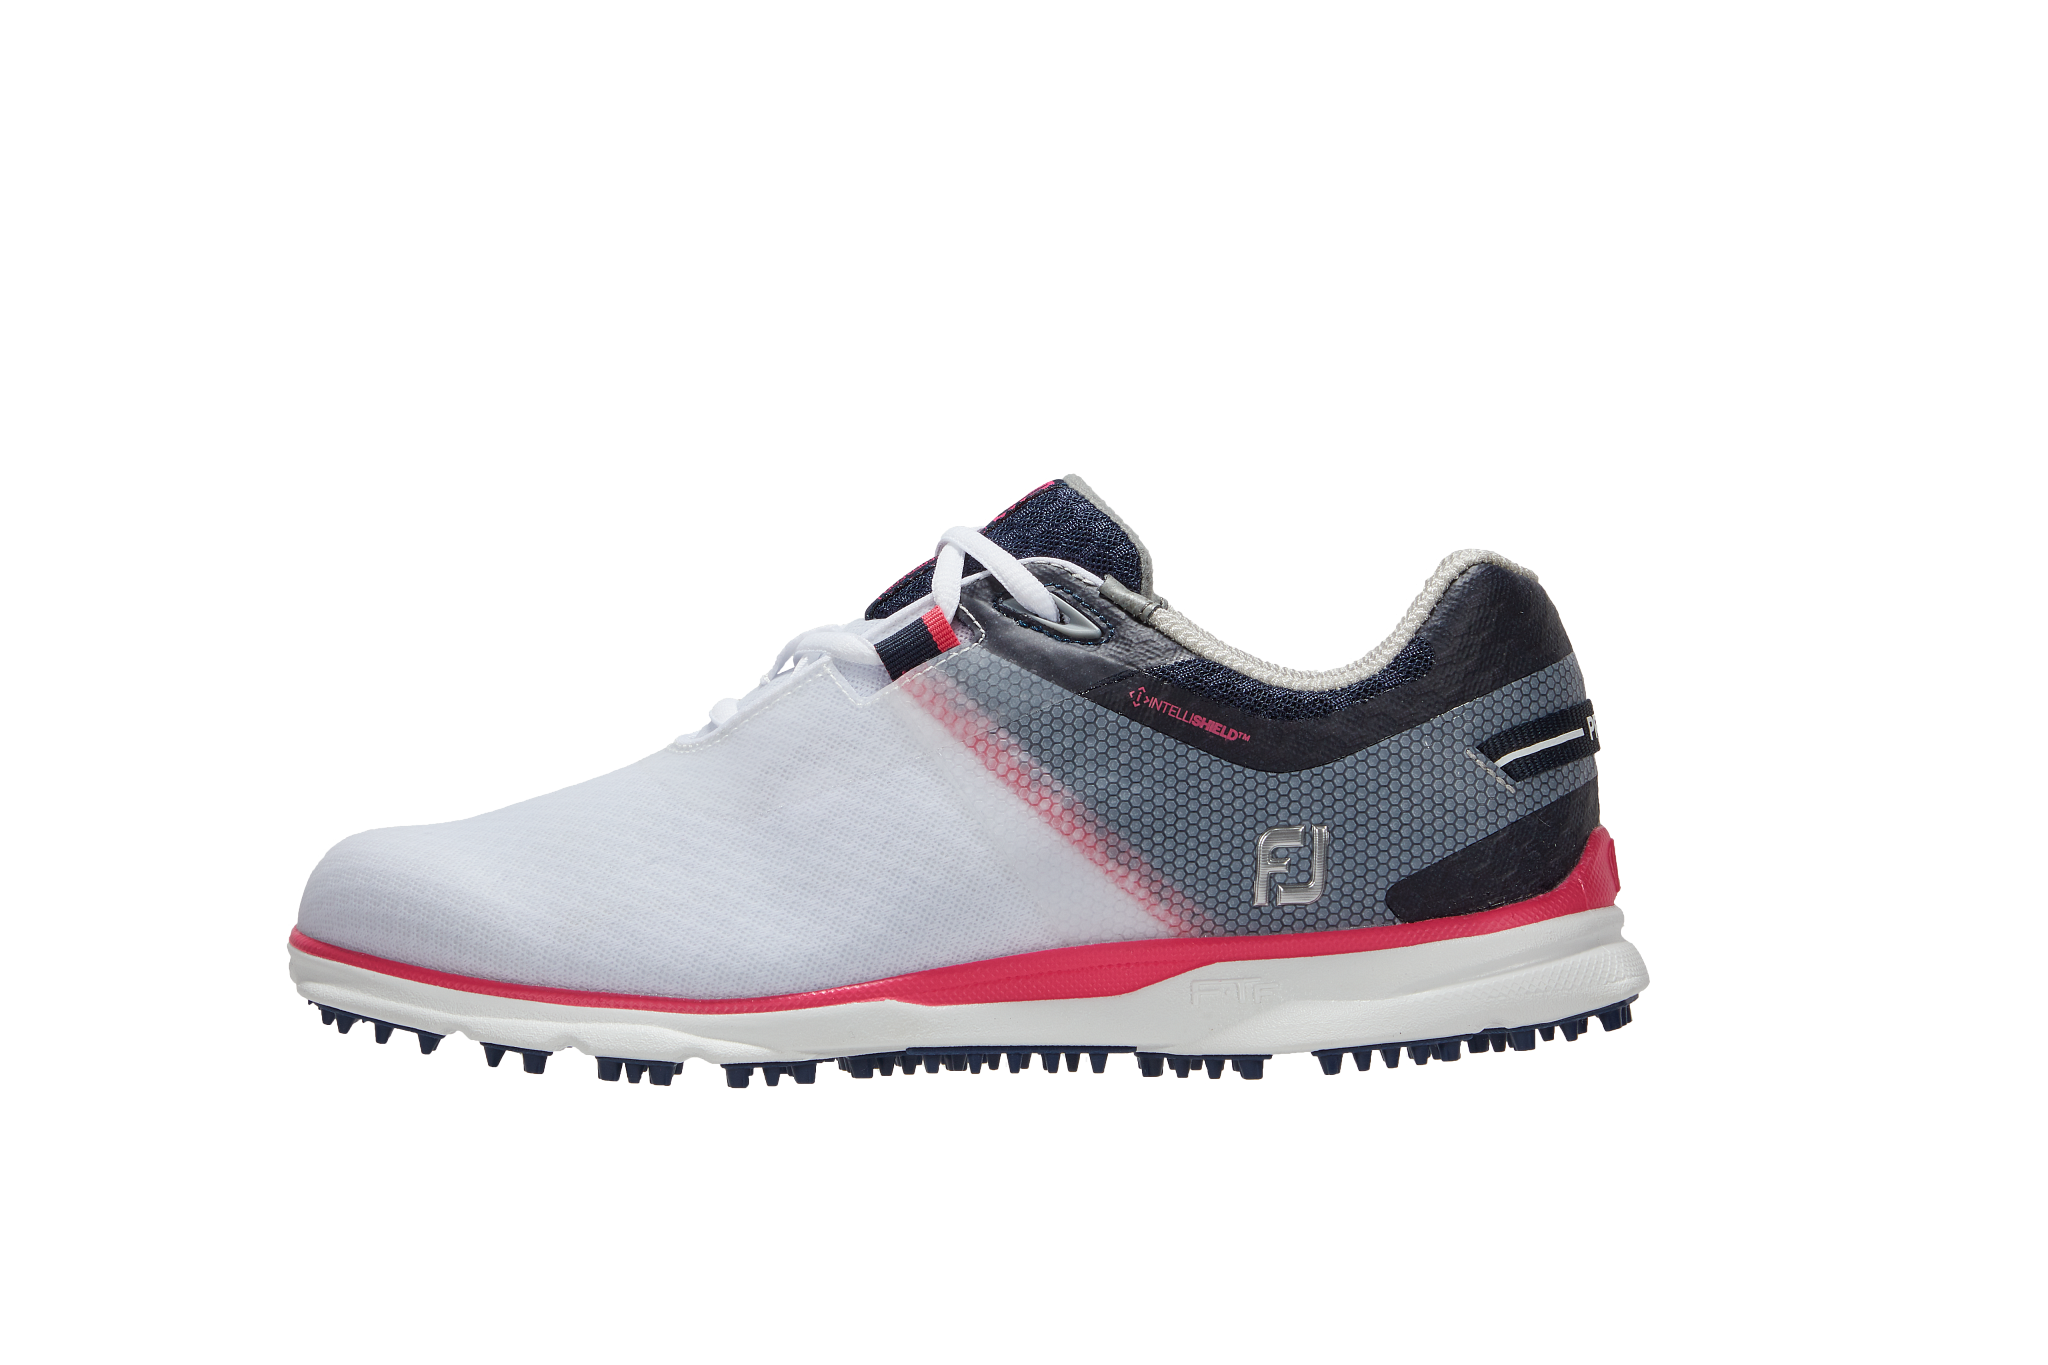 FOOTJOY Women's Pro SL Sport Spikeless Golf Shoe - White/Grey